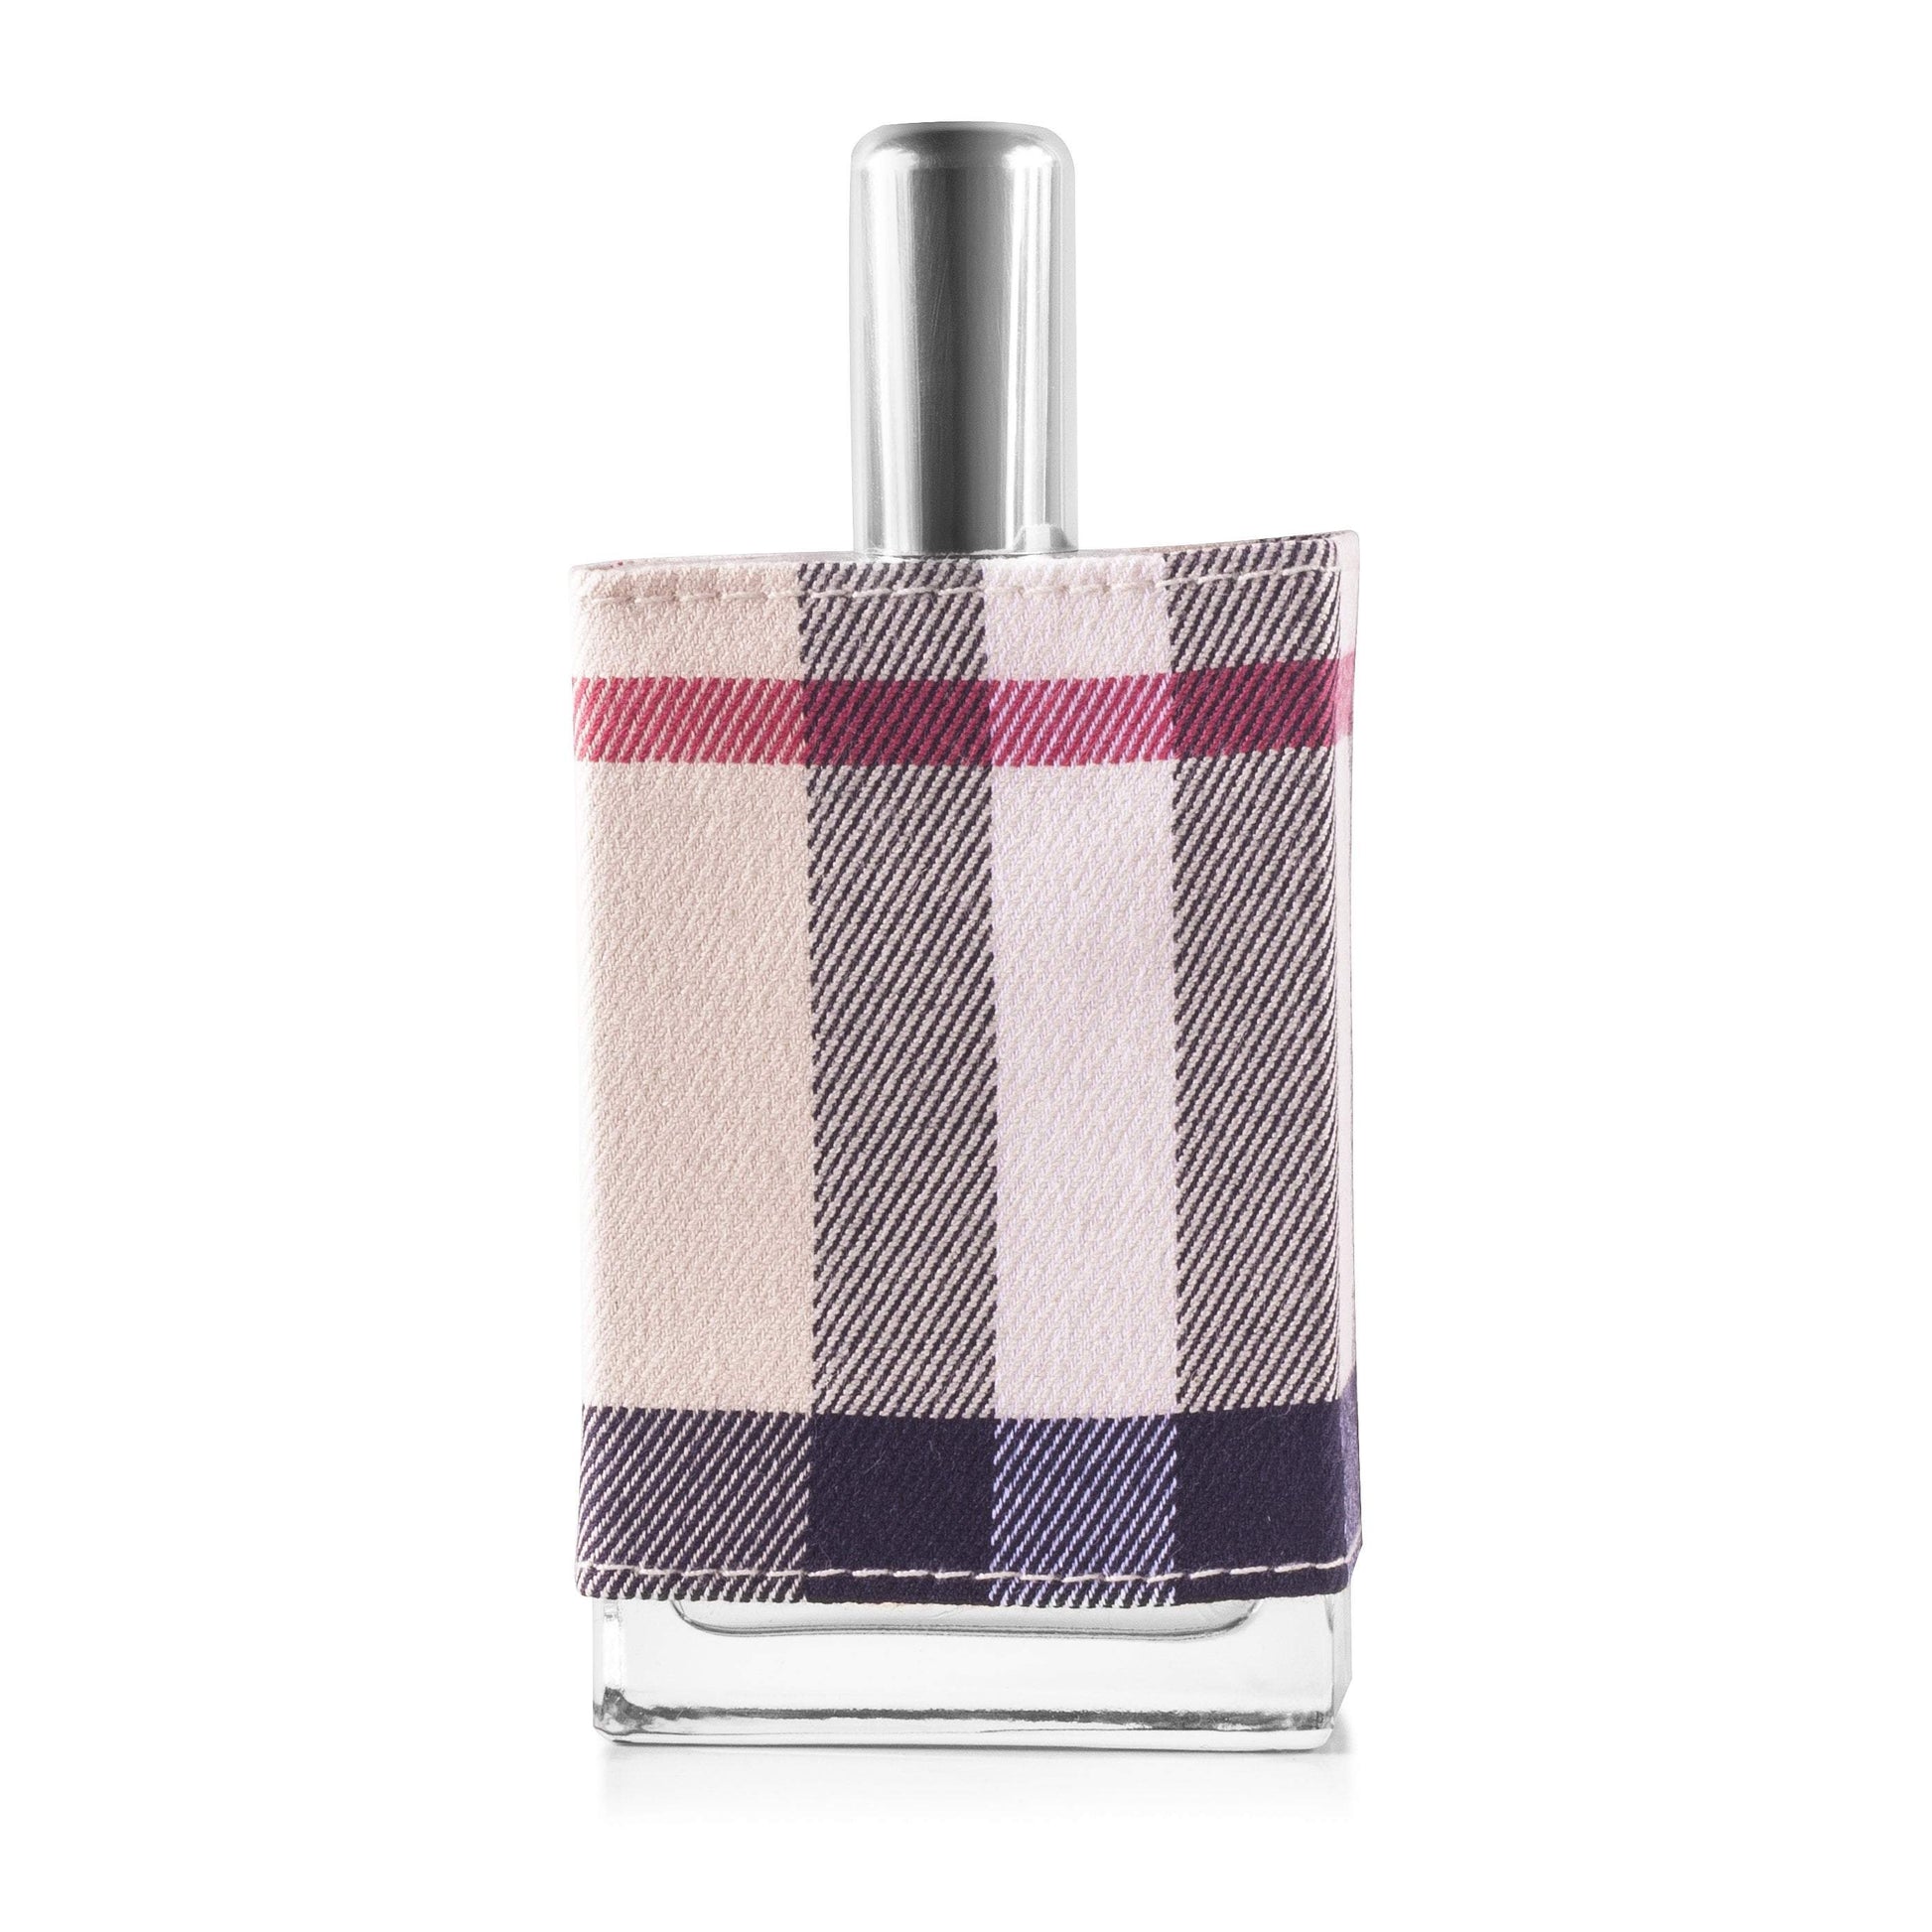 London Eau de Parfum Spray for Women by Burberry, Product image 8